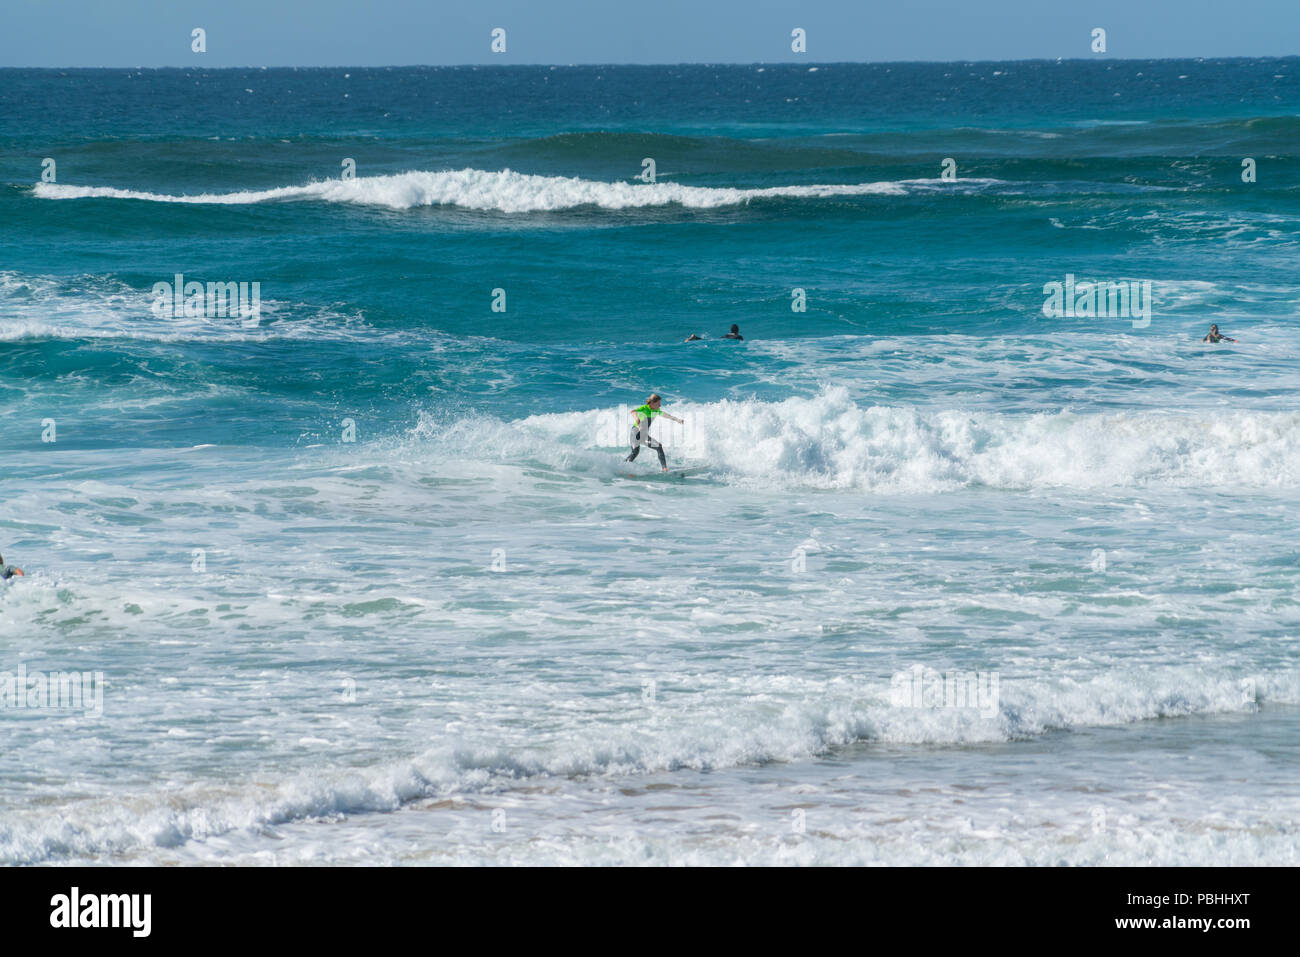 COOLANGATTA, AUSTRALIA - 10 de julio de 2018; la amplia playa de surf con surfistas cabalgando por ola blanca espuma con el profundo mar azul turquesa detrás Foto de stock